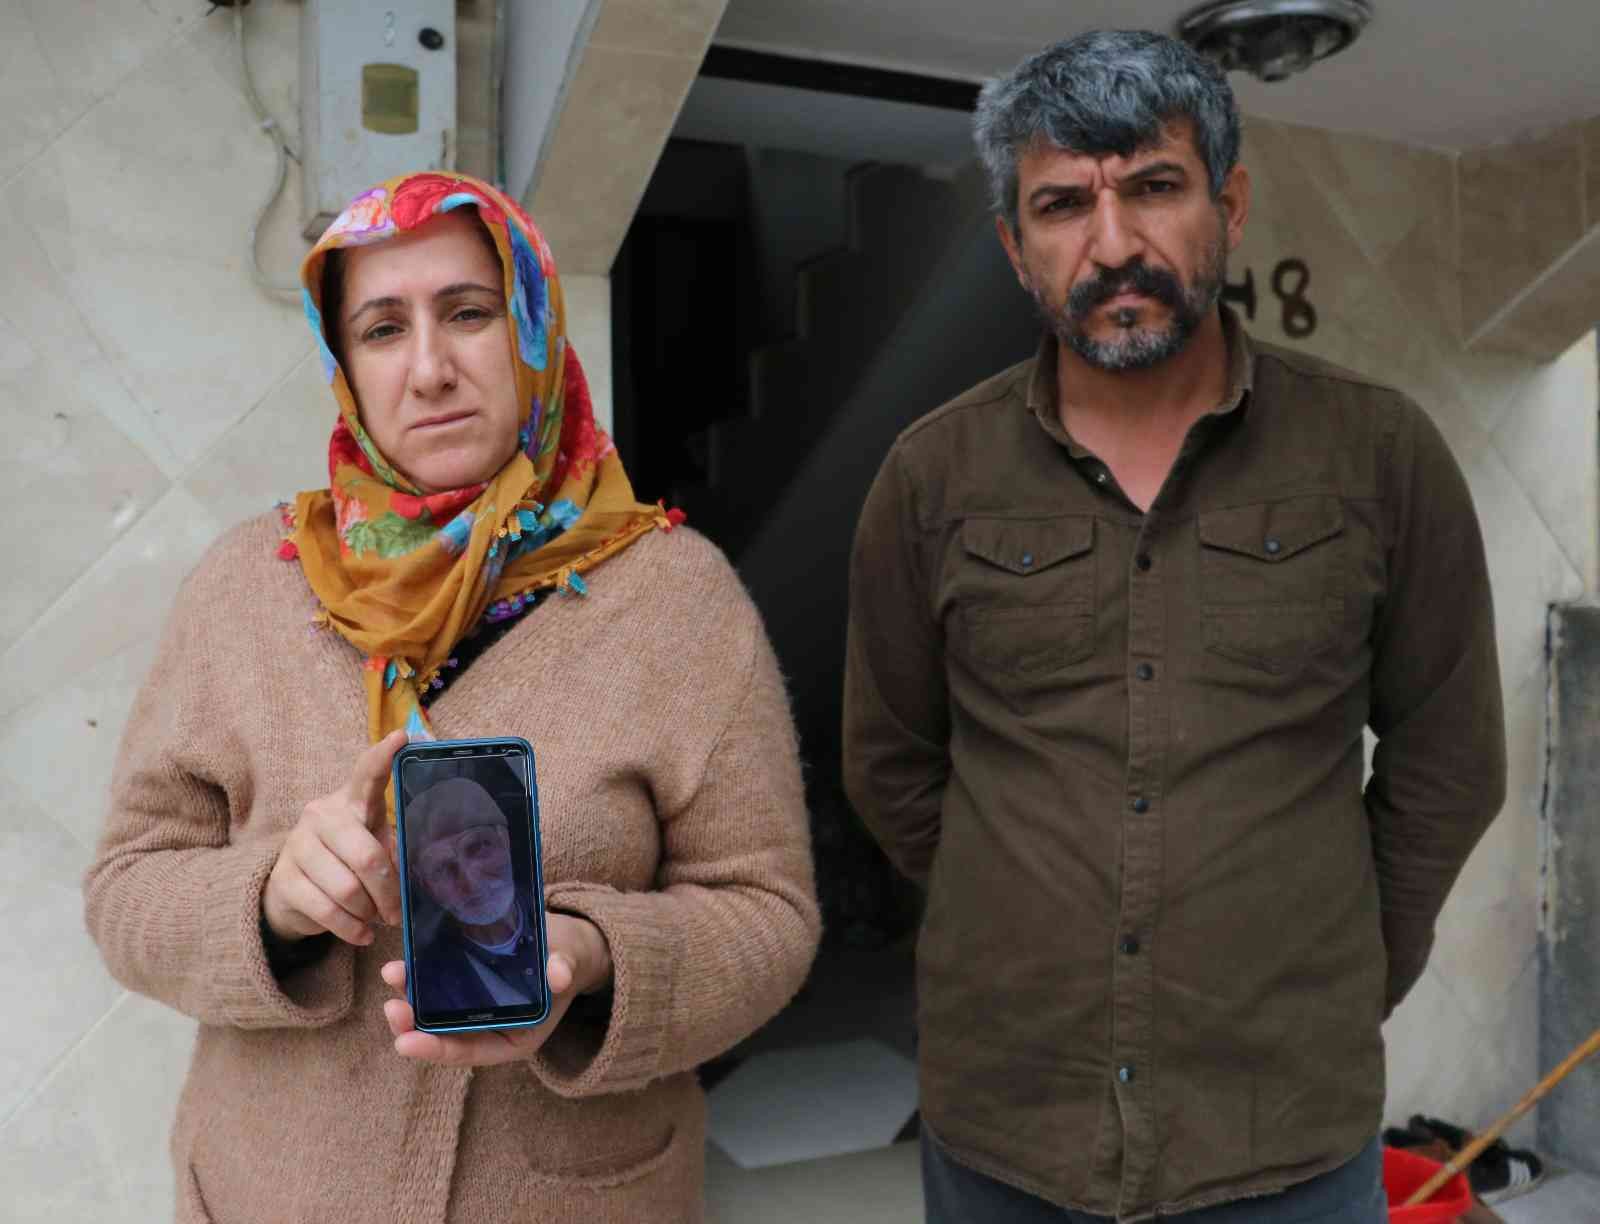 Alzaymır hastası Mehmet dededen 23 gündür haber alınamıyor #adana